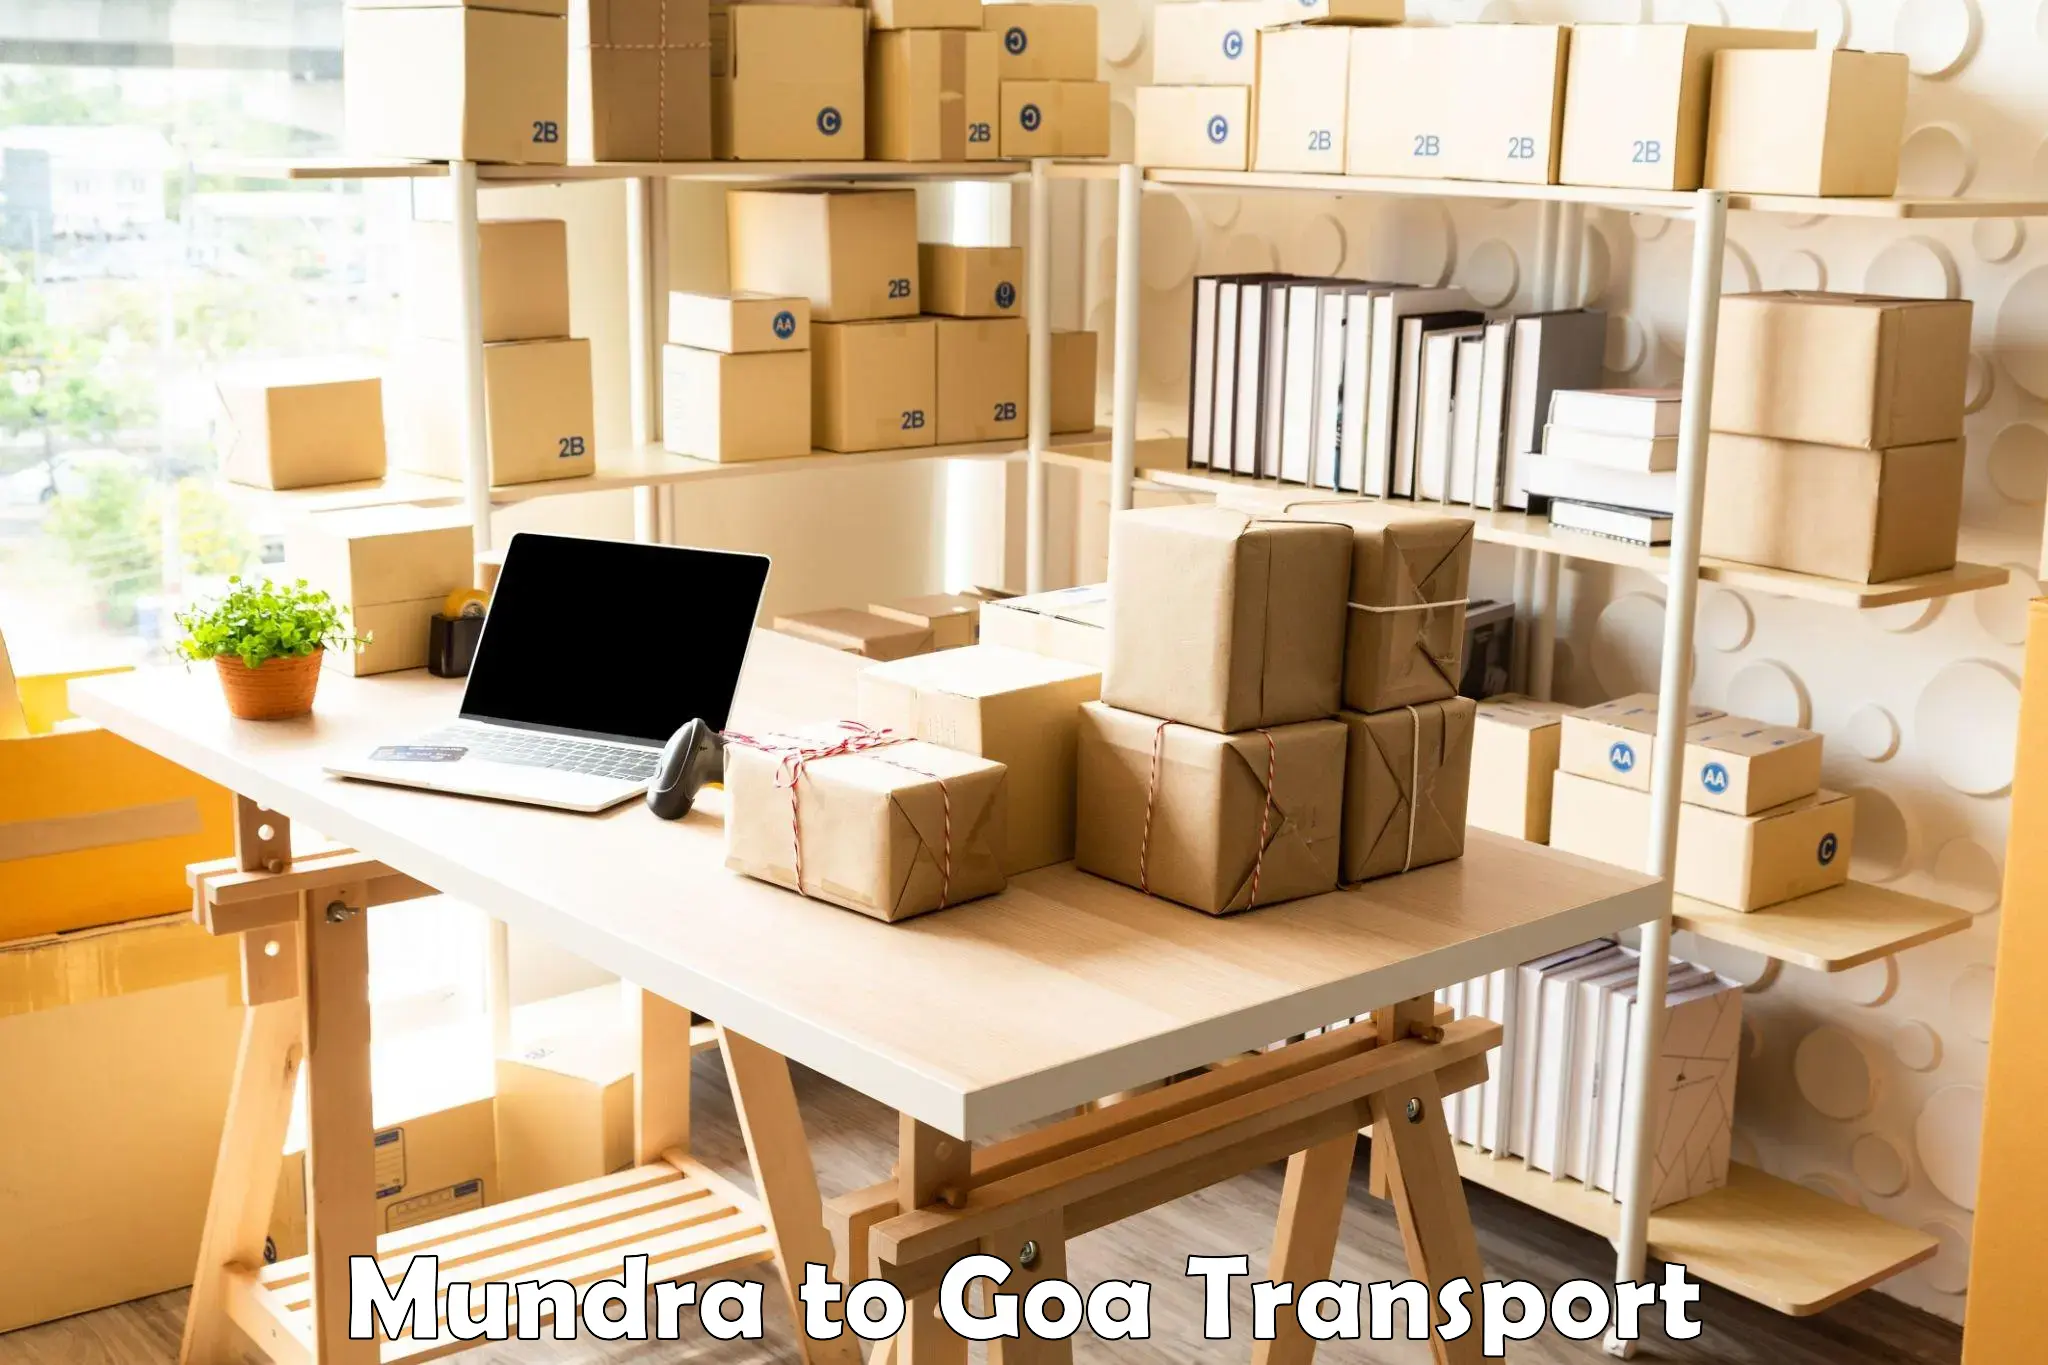 Transportation services Mundra to Mormugao Port